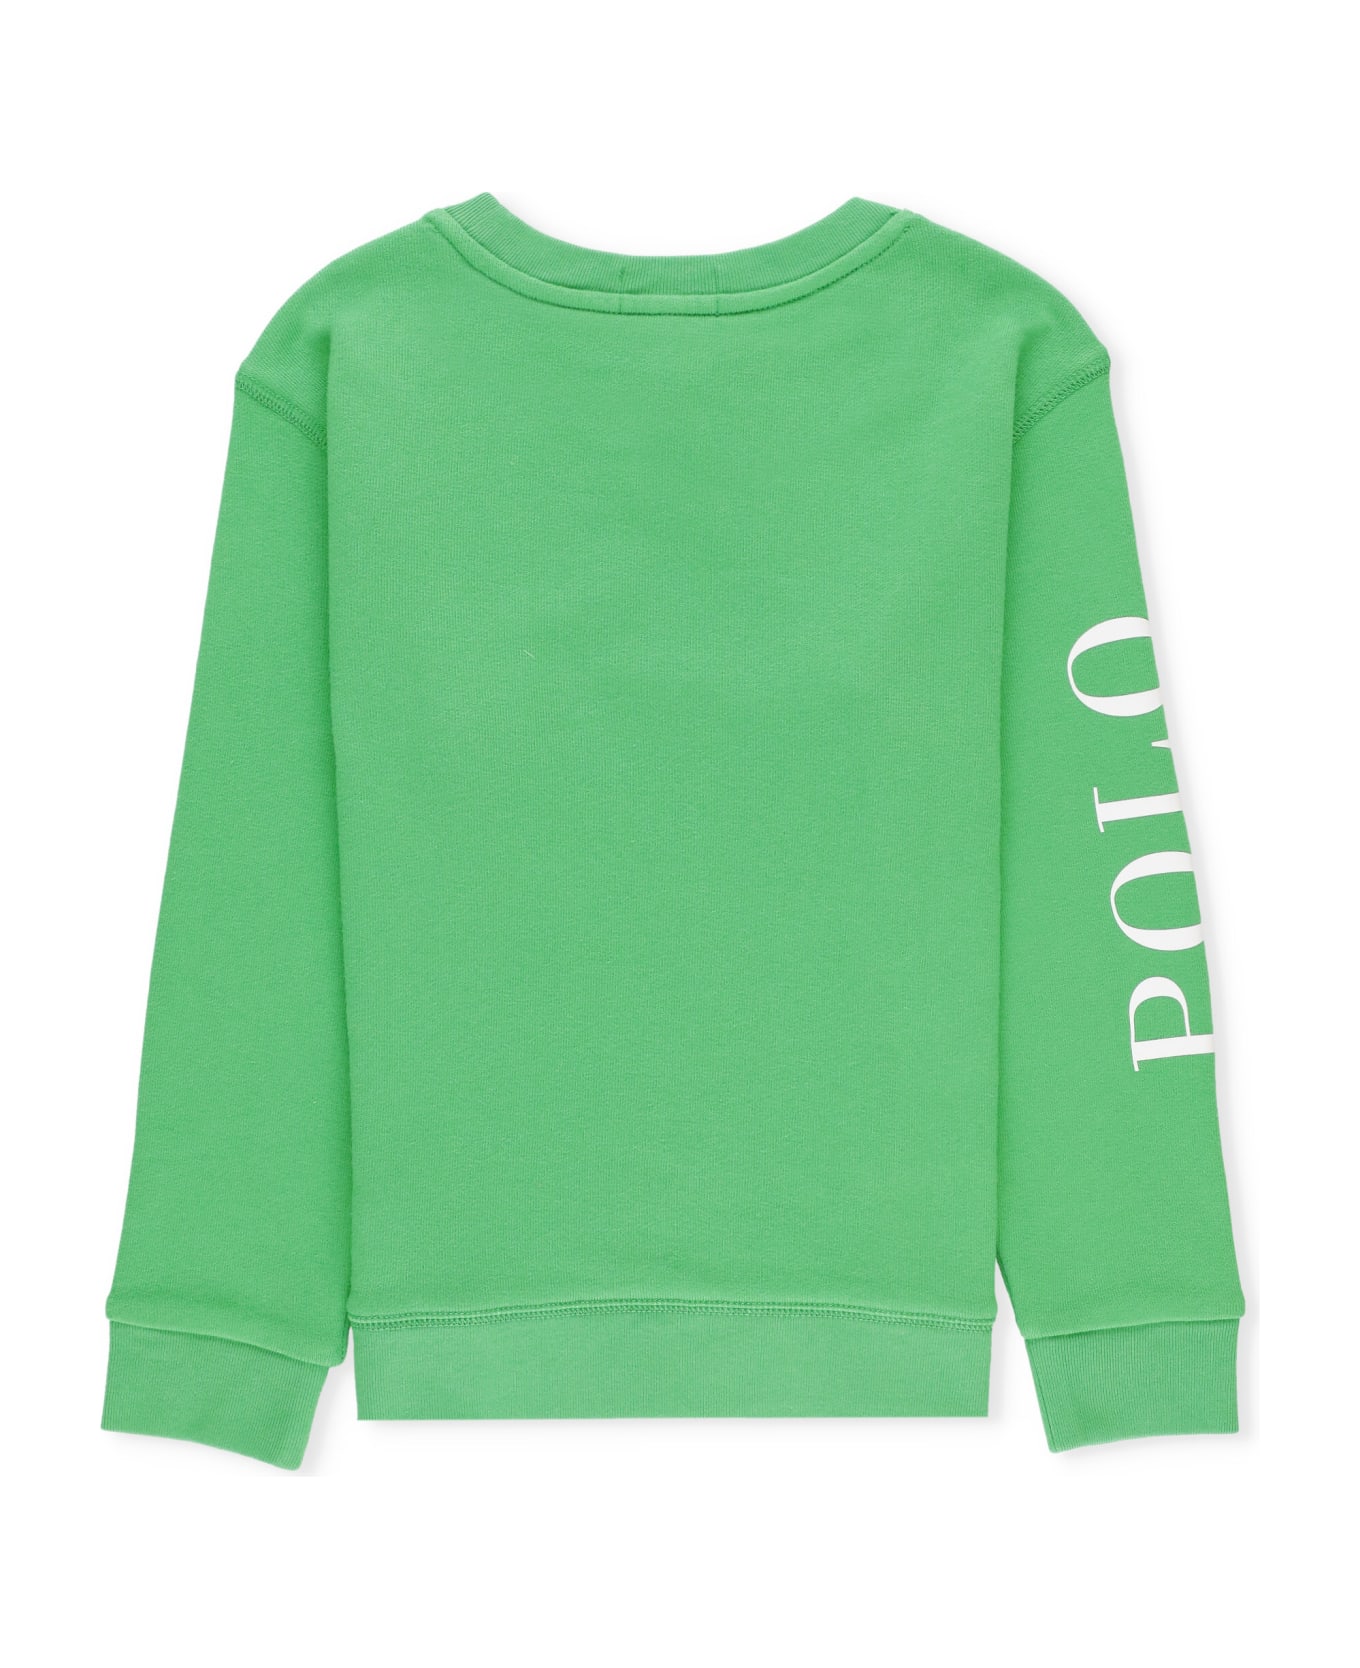 Ralph Lauren Pony Sweatshirt - Green